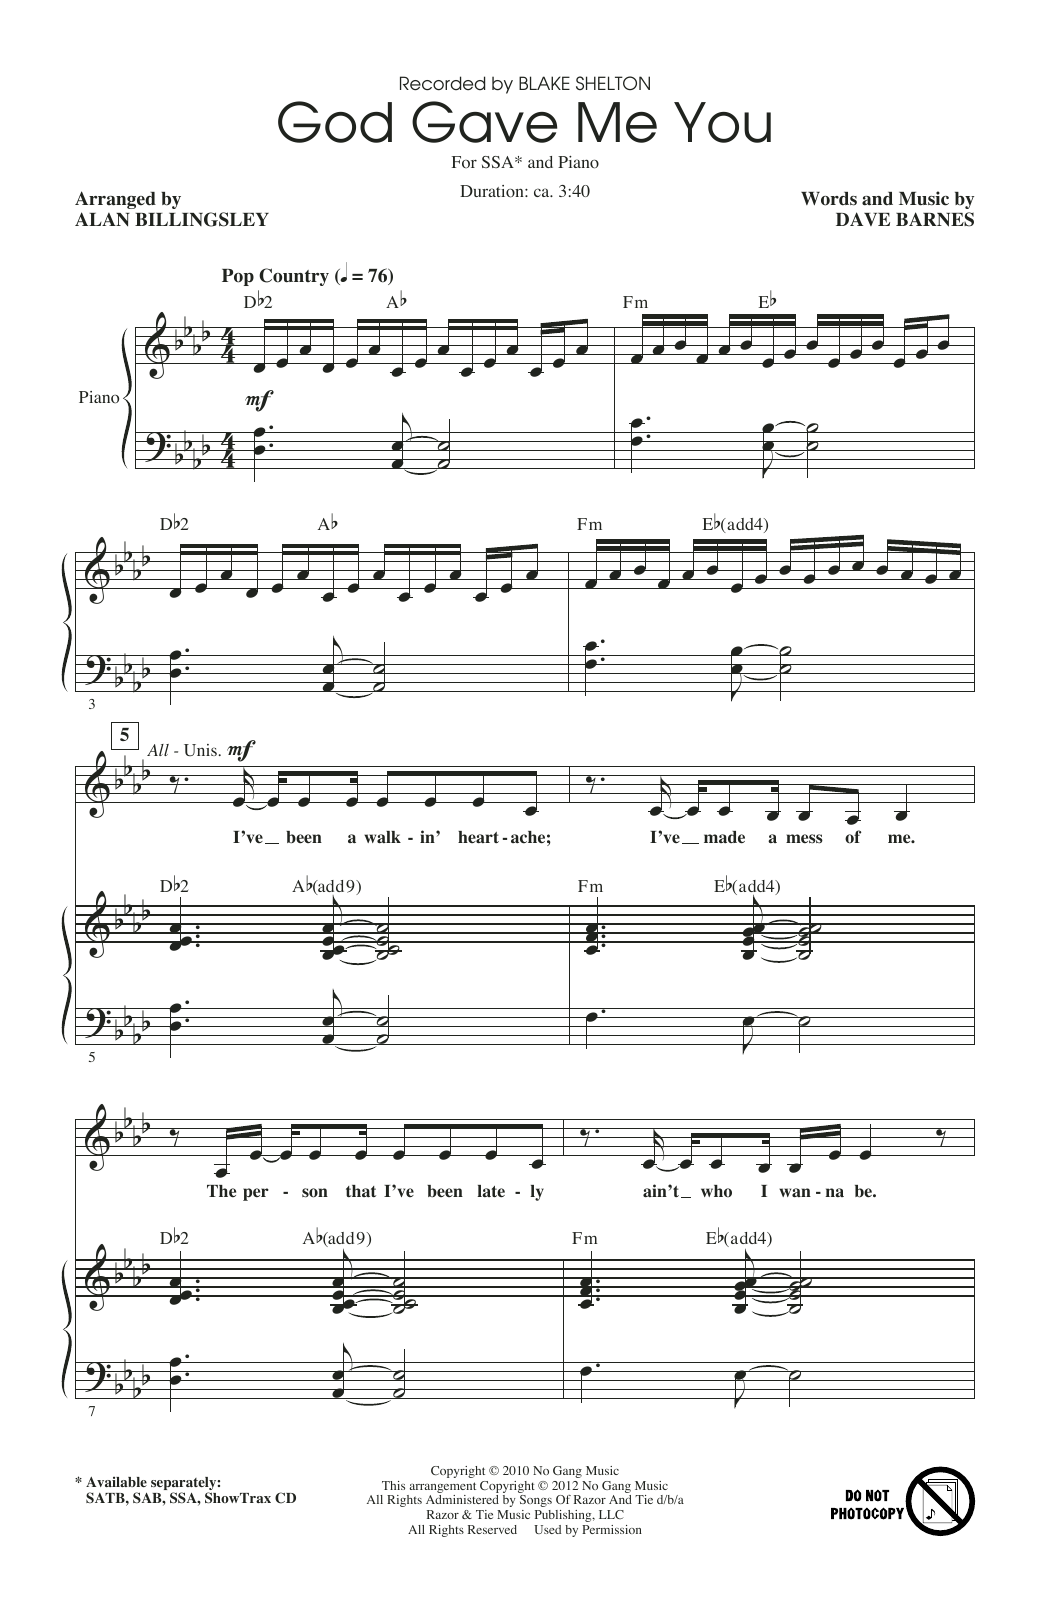 Blake Shelton God Gave Me You (arr. Alan Billingsley) Sheet Music Notes & Chords for SAB Choir - Download or Print PDF